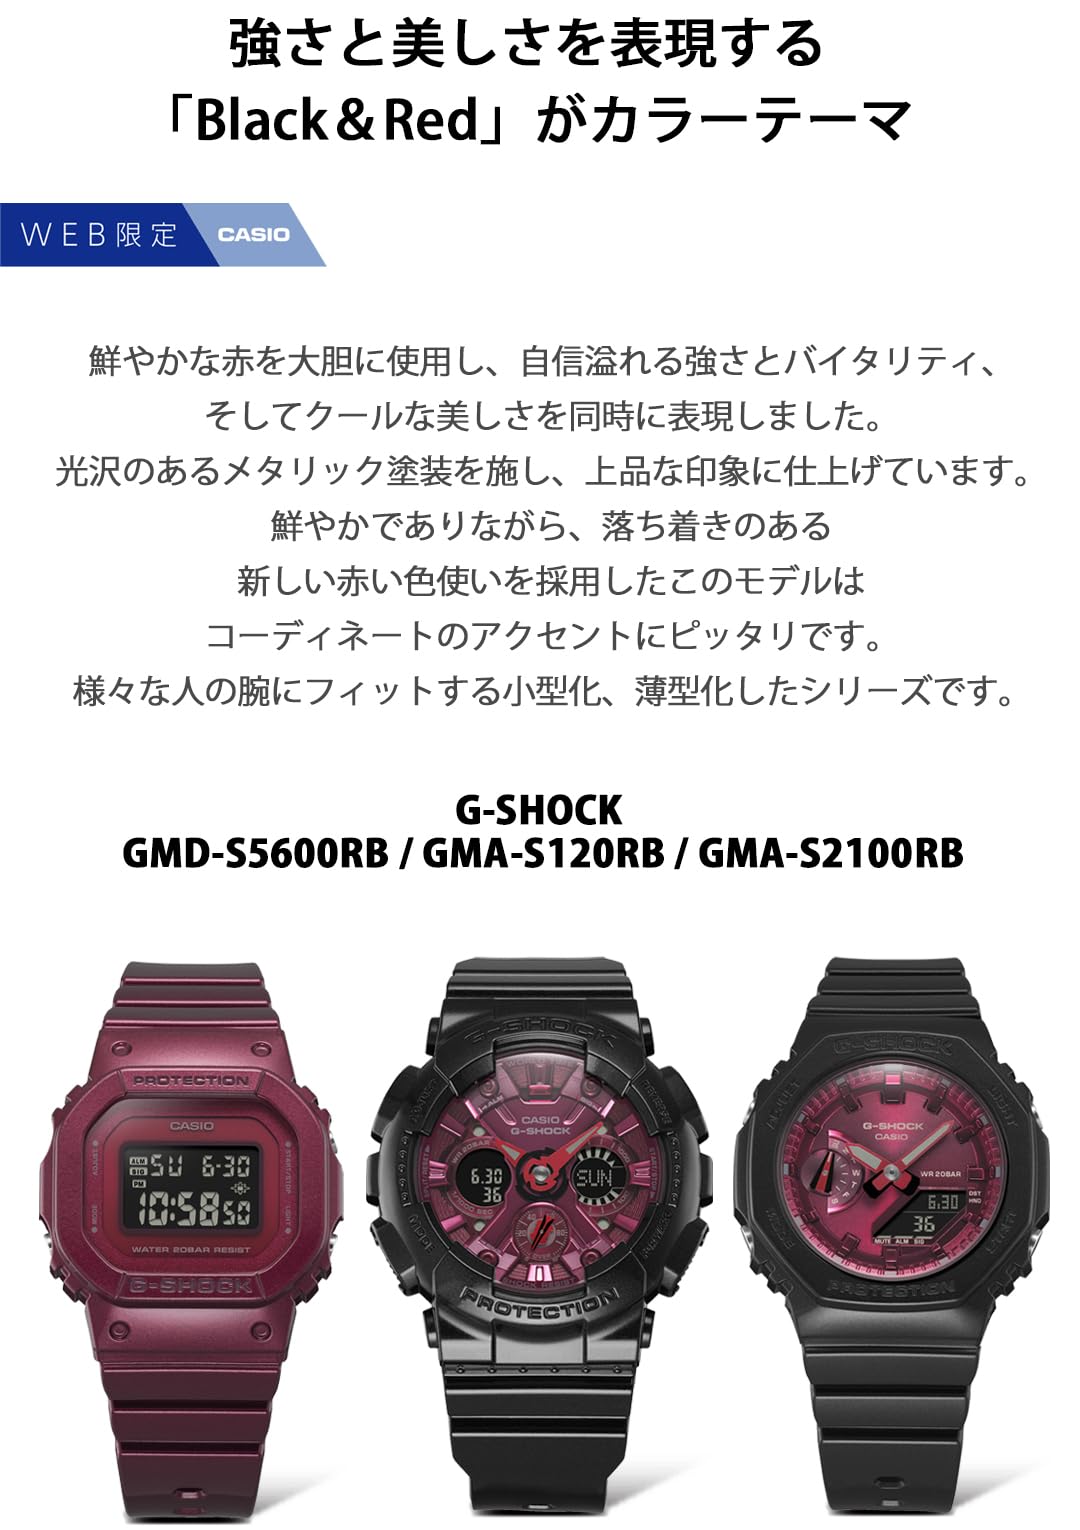 ジーショック [カシオ] 腕時計 【国内正規品】 ミッドサイズモデル Black＆Red GMA-S120RB-1AJF レディース ブラック - BanzaiHobby